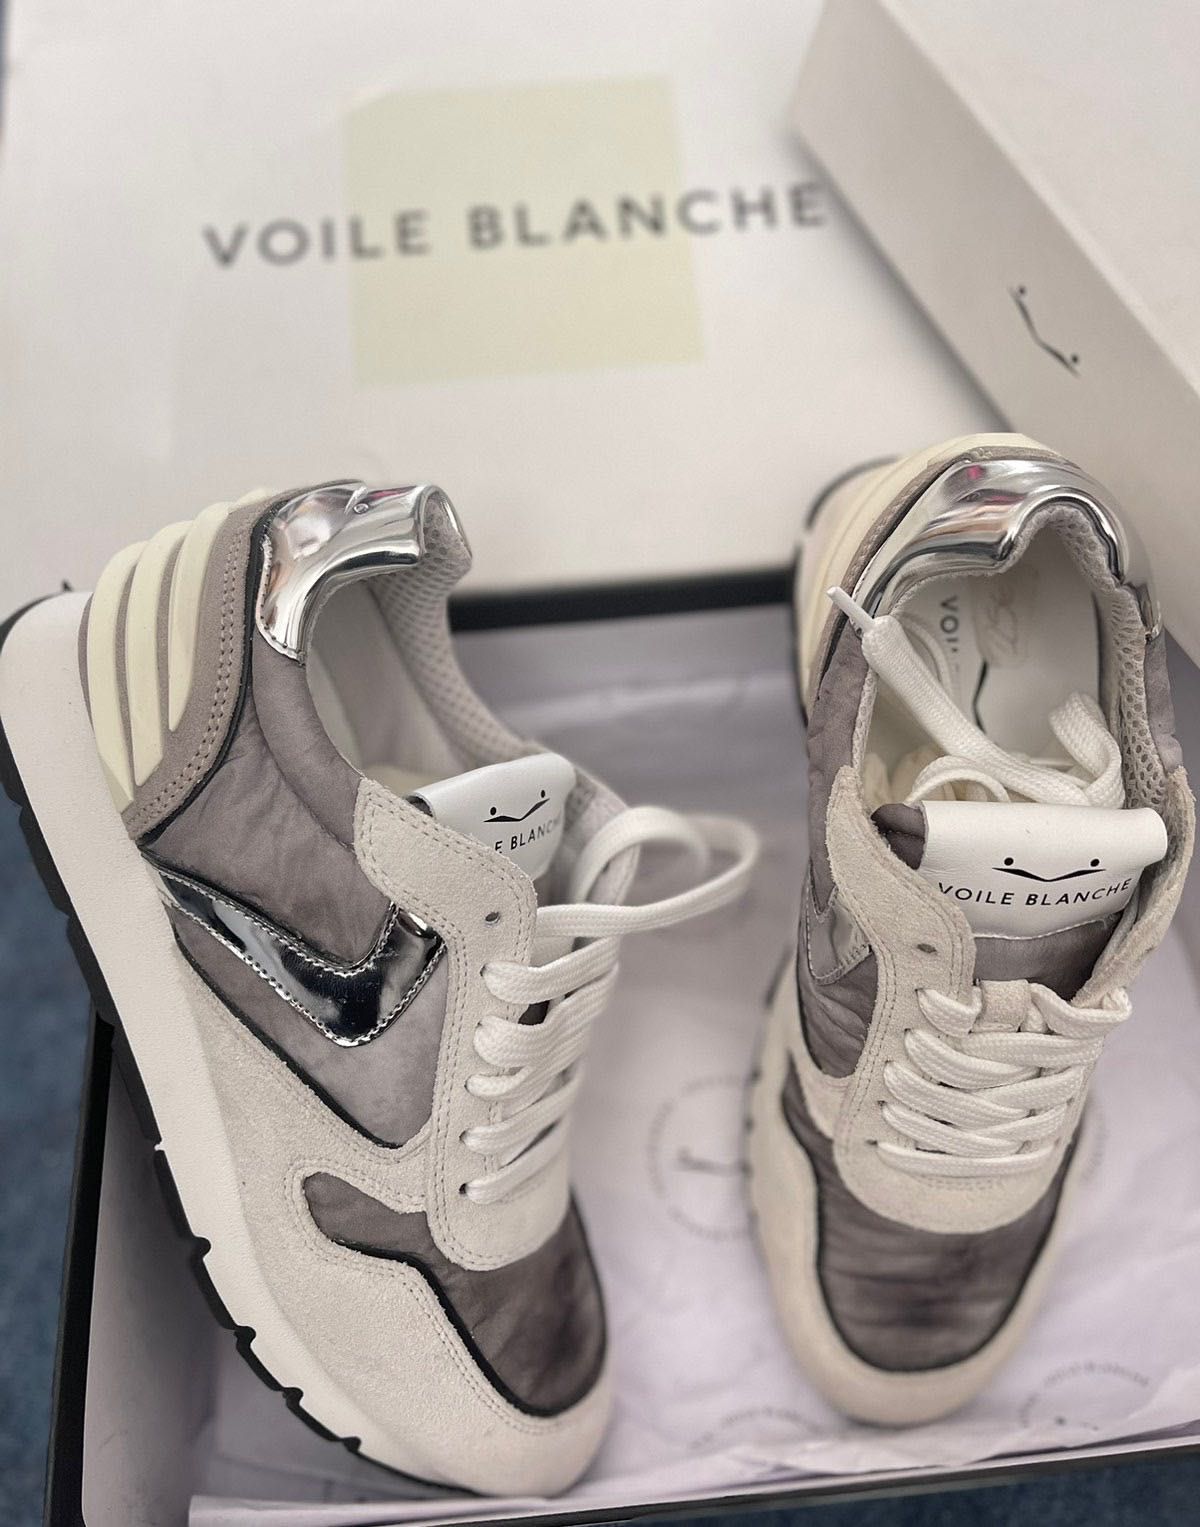 Новые женские кроссовки, кеды,бренд Voile Blanche,37 размер.Оригинал!